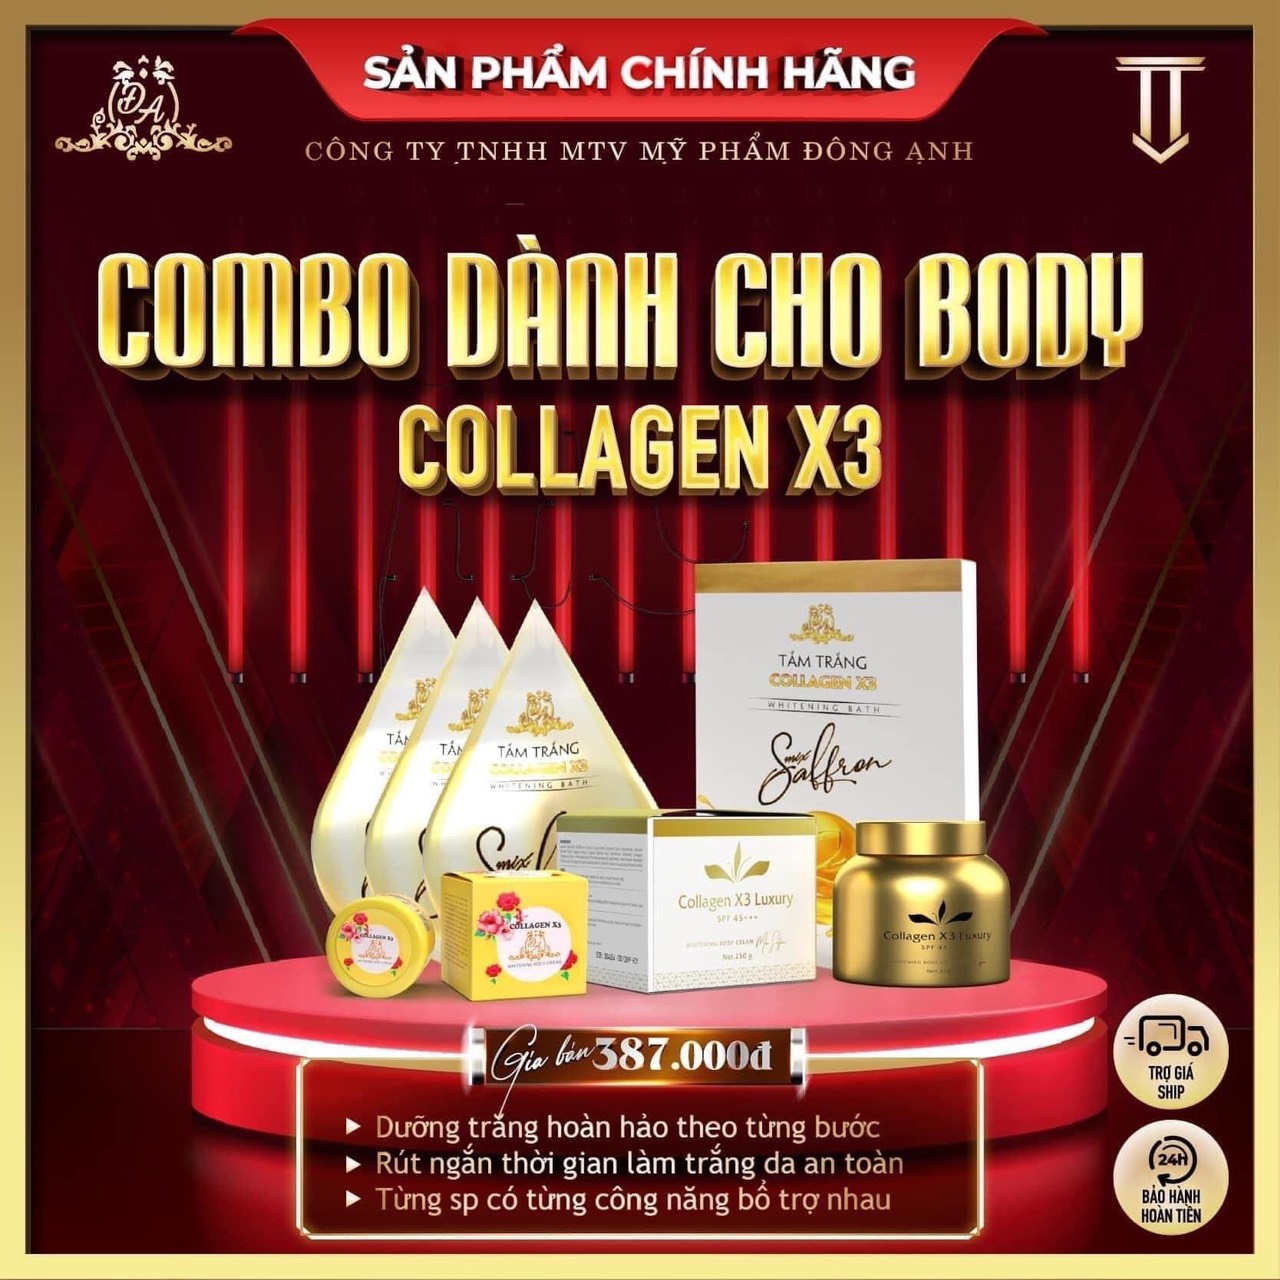 Phân phối chính hãng trọn bộ sản phẩm Collagen X3 Mỹ Phẩm Đông Anh